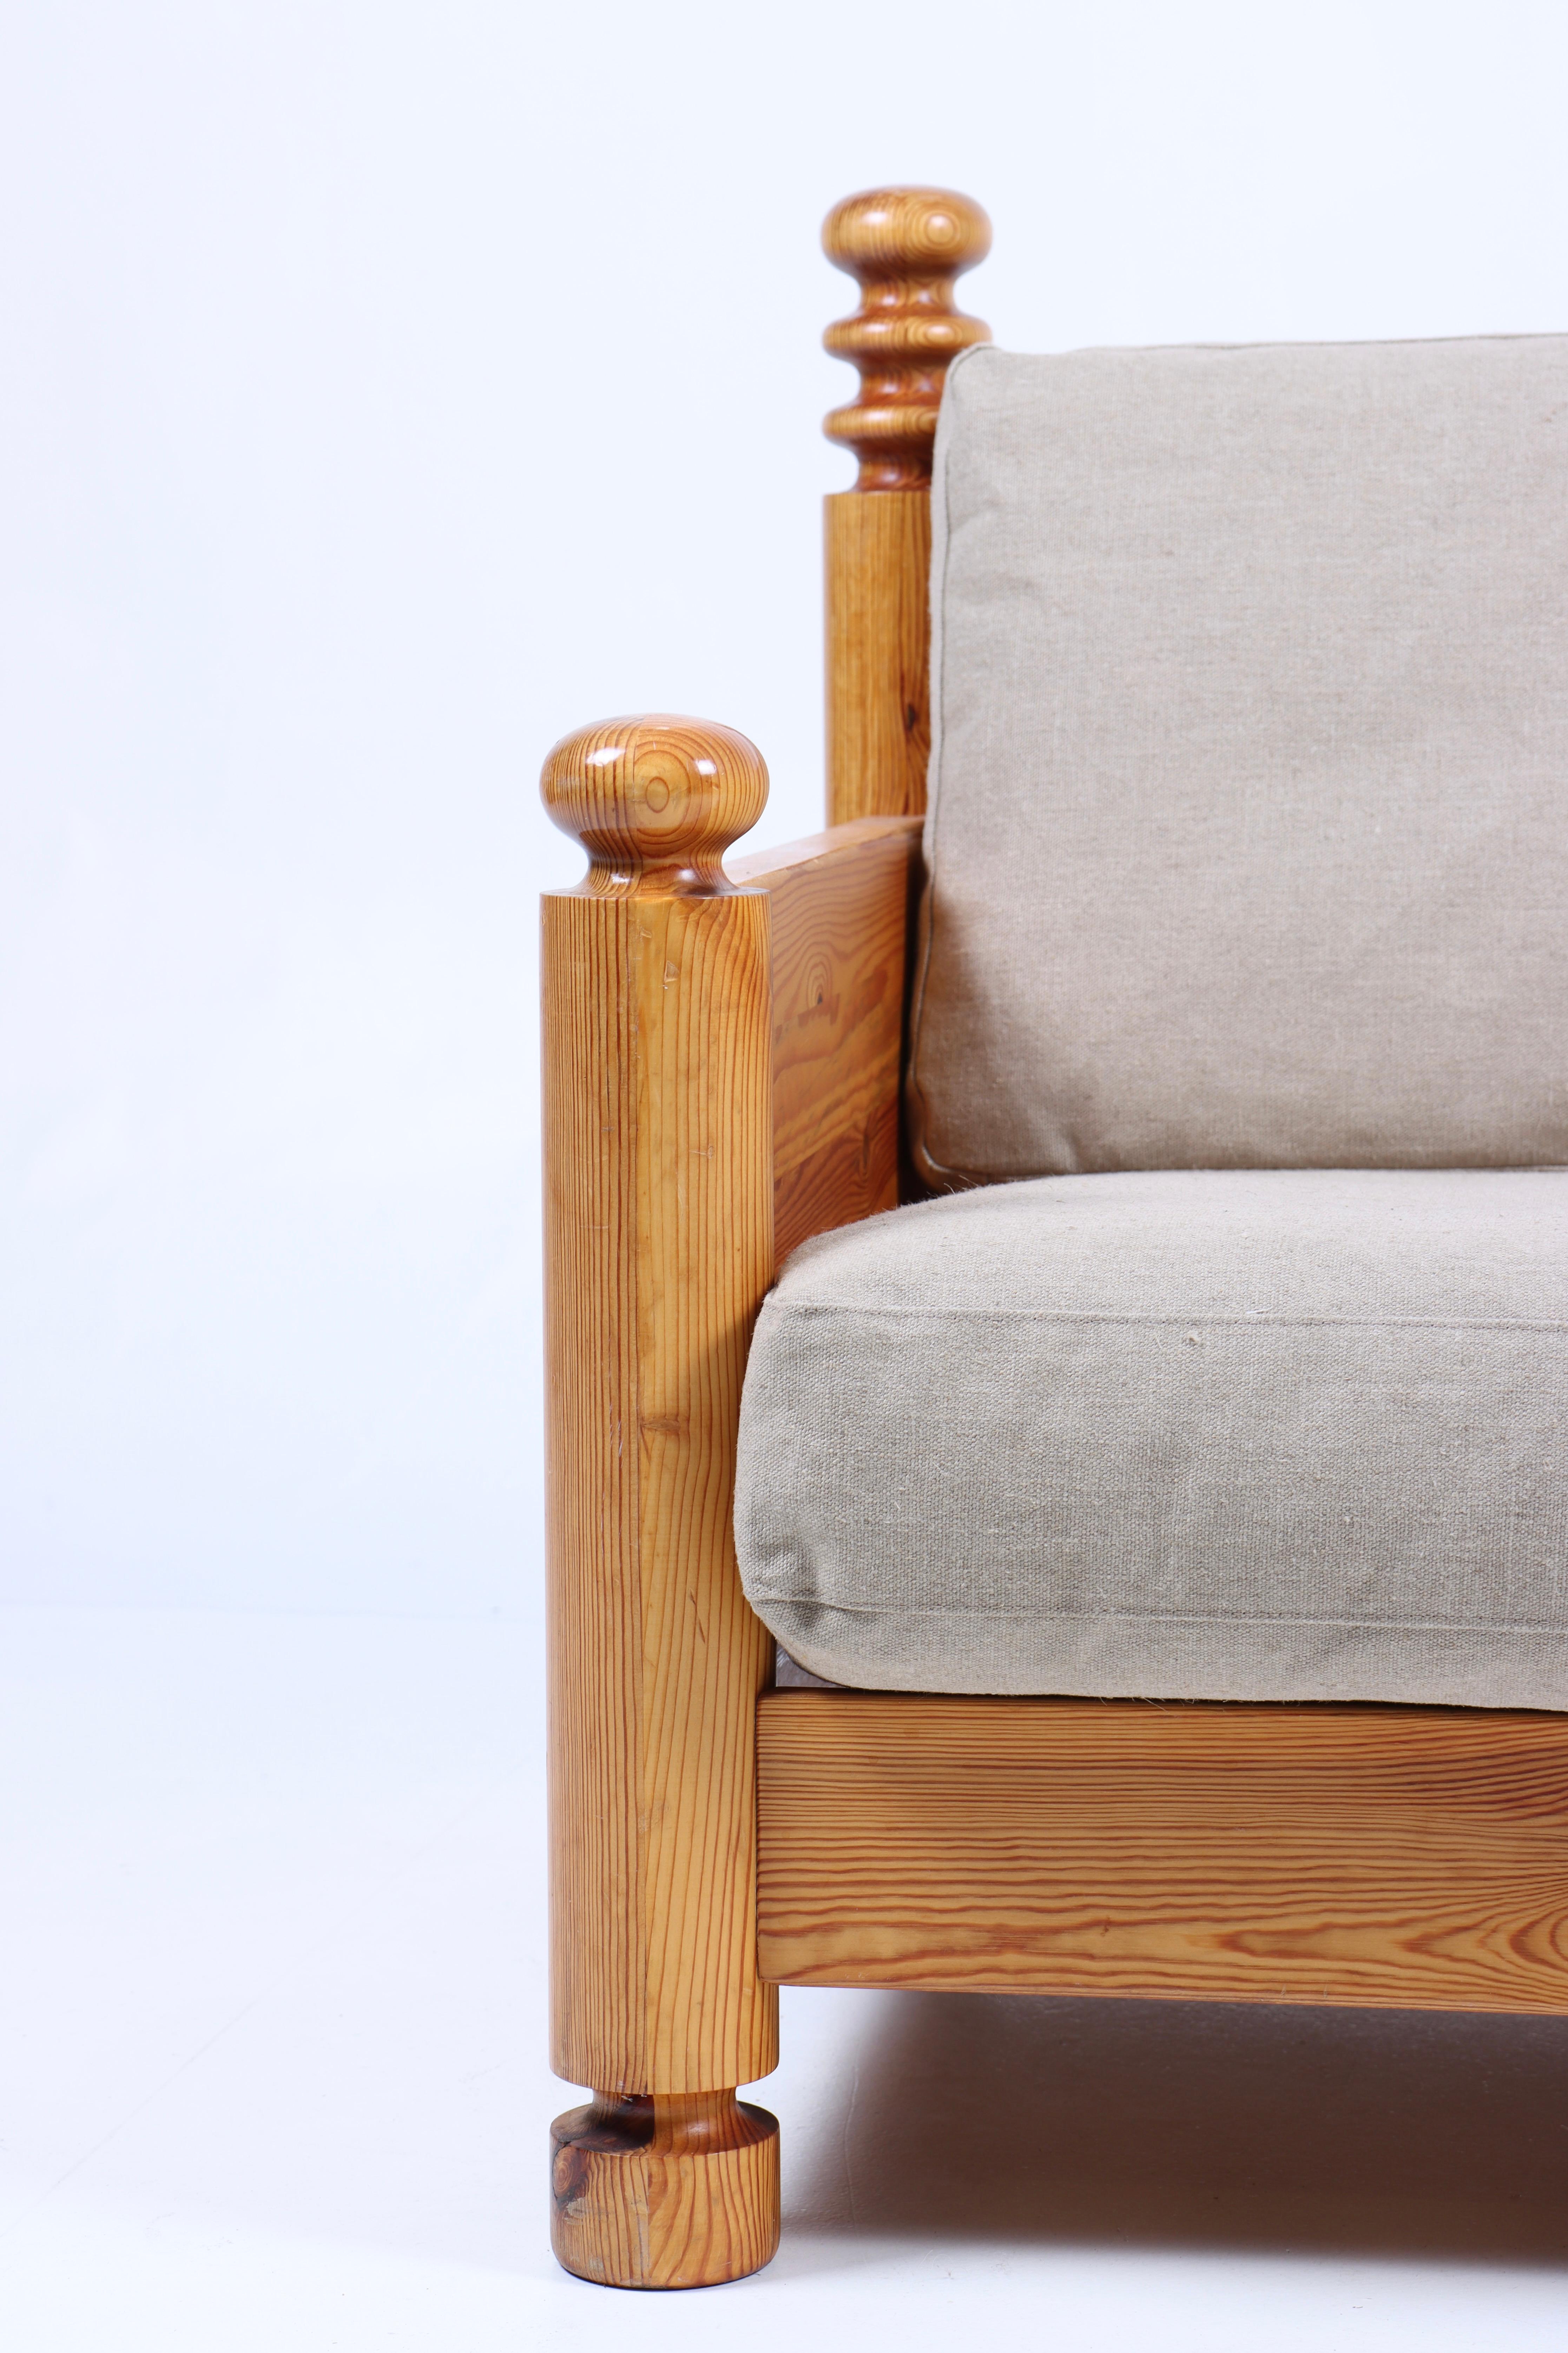 Chaise longue en pin massif, conçue par Uno & Östen Kristiansson pour Luxus Furniture. Fabriqué en Suède. Très bon état avec un nouveau rembourrage en toile.